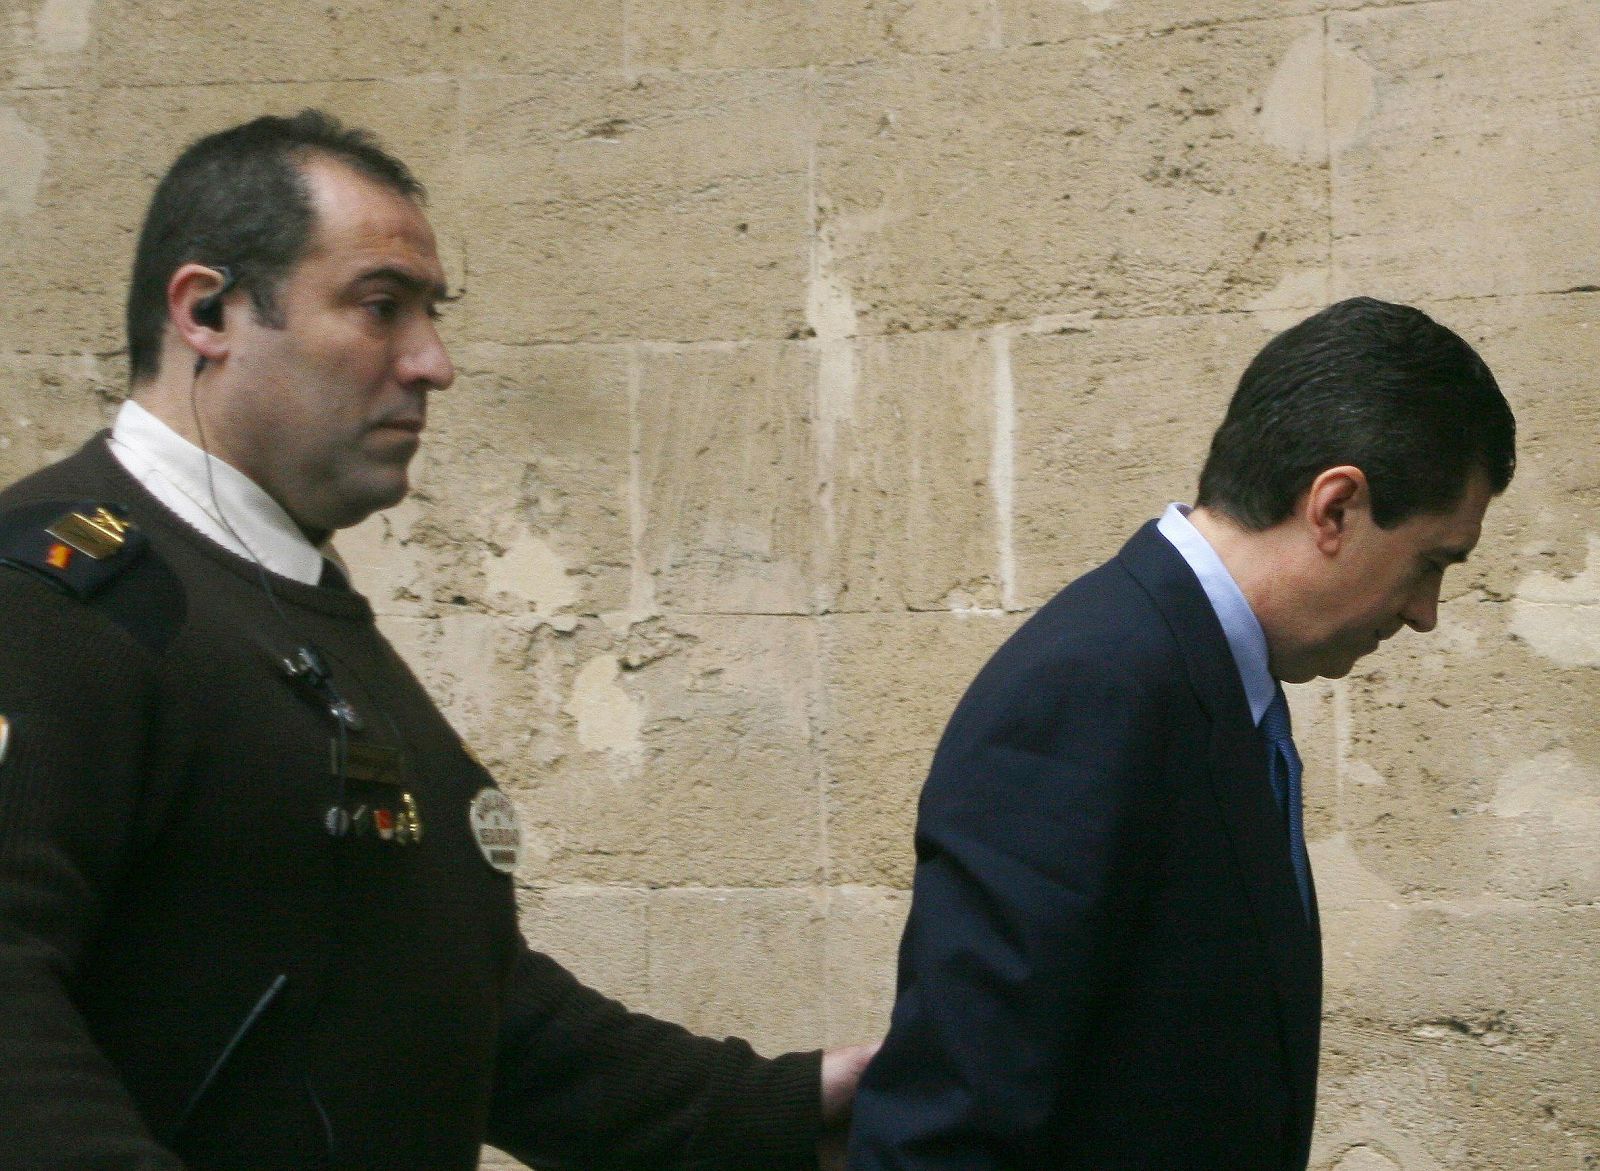 El ex presidente balear Jaume Matas llega escoltado a los Juzgados de Palma